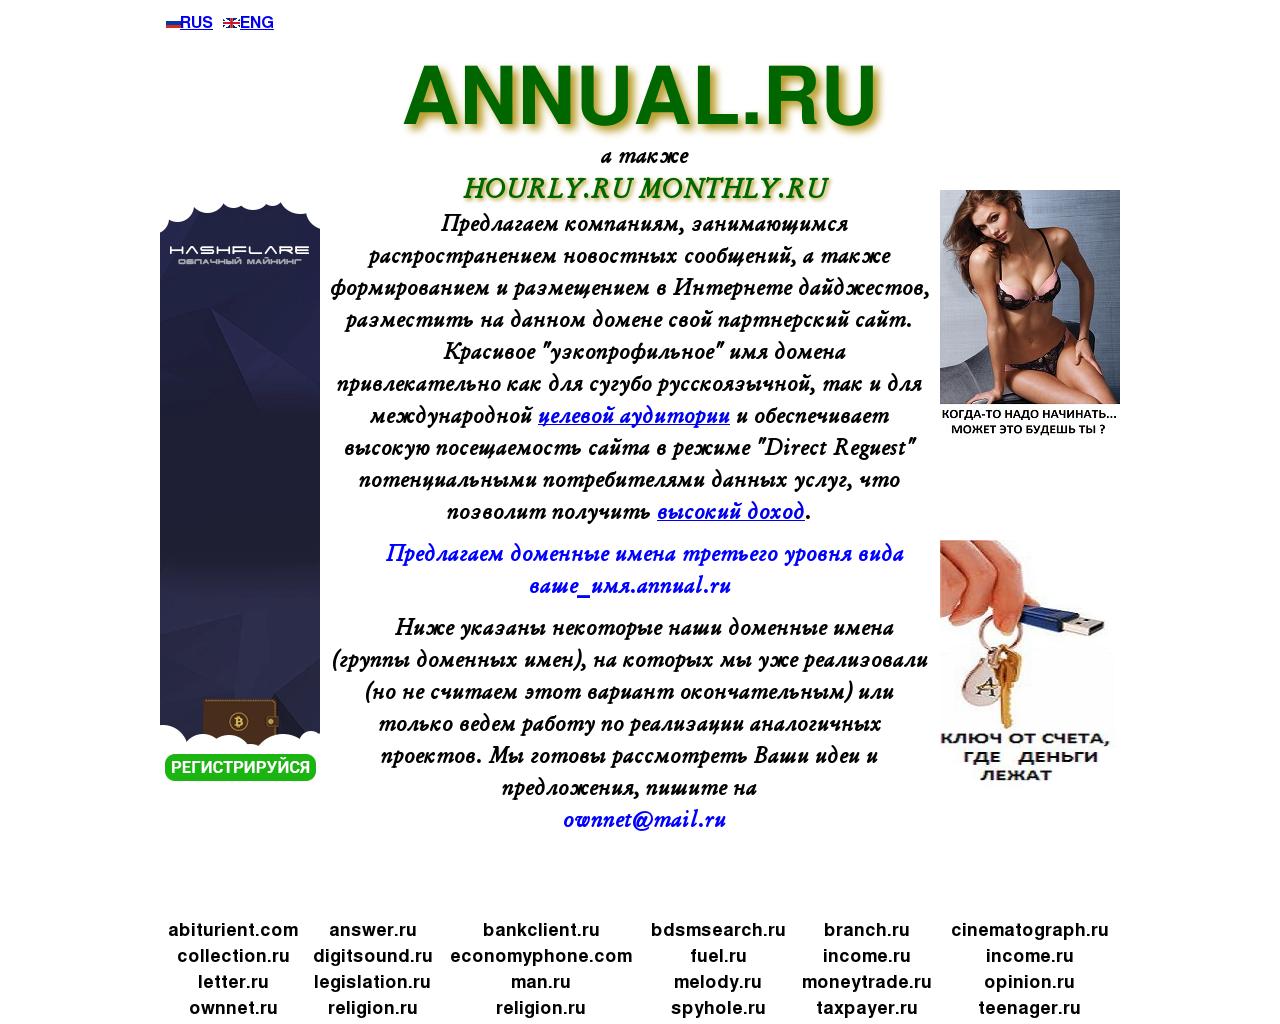 Изображение сайта annual.ru в разрешении 1280x1024